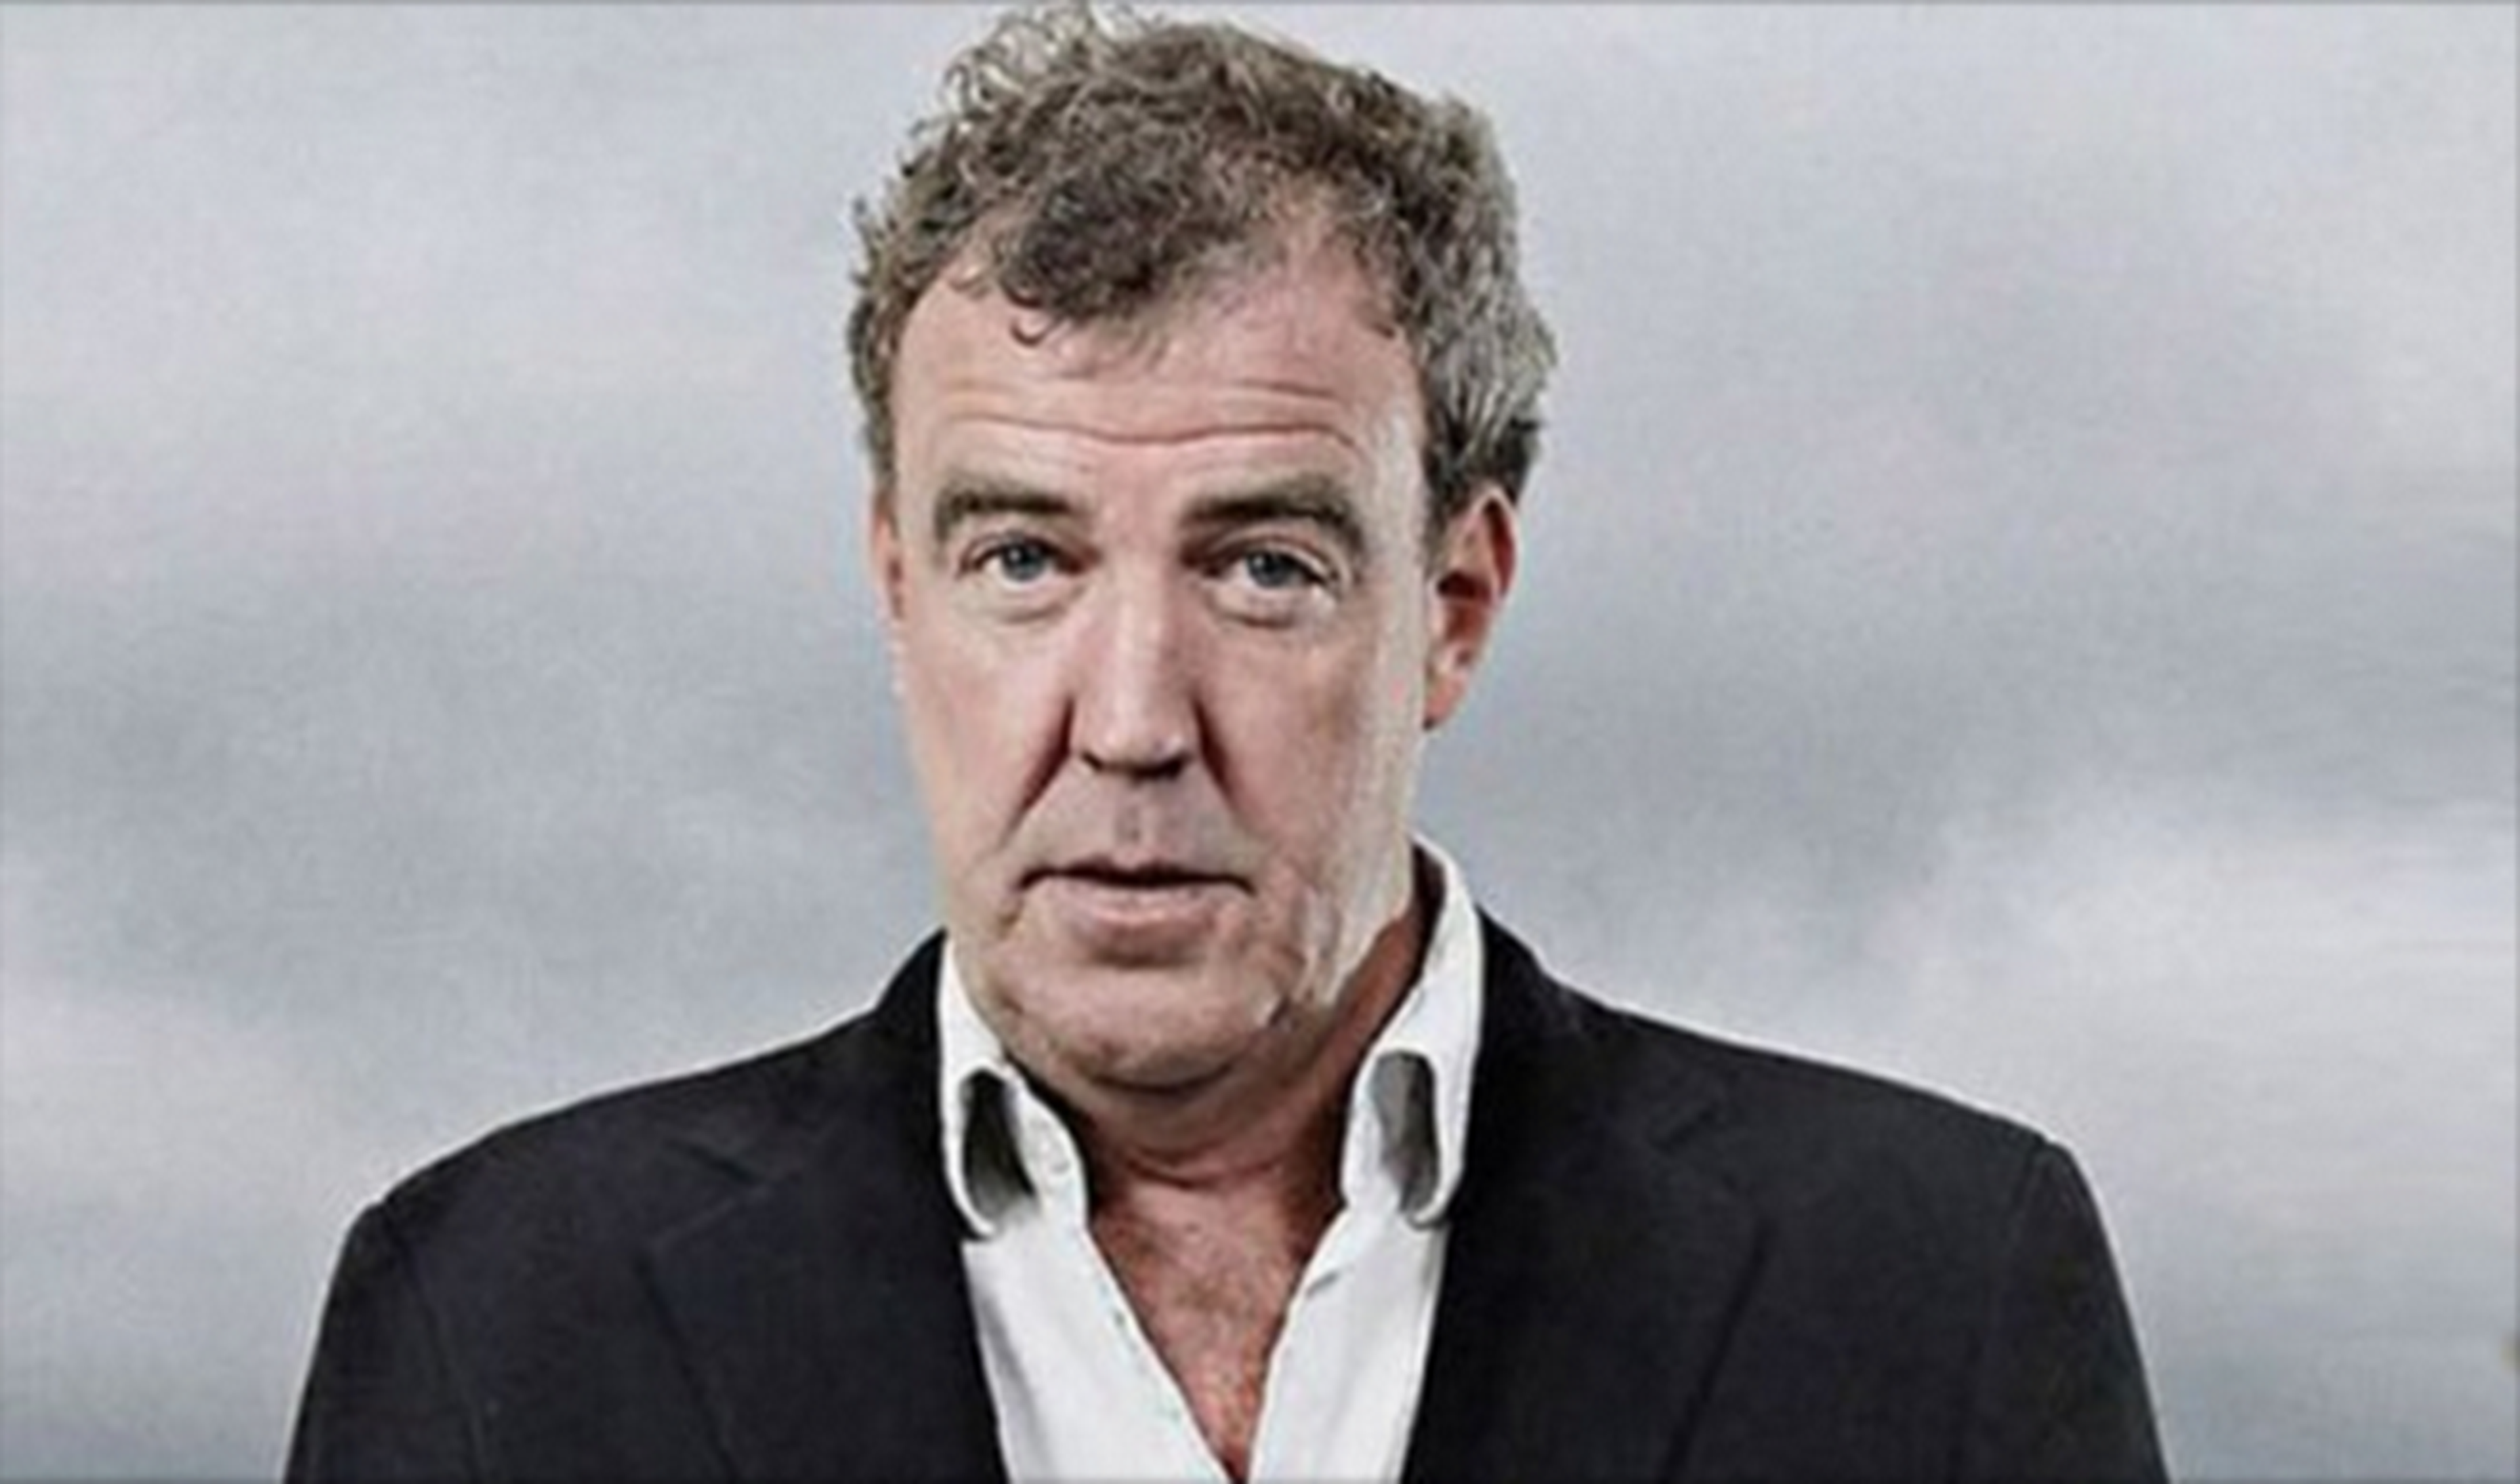 Nuevo rumor sobre Clarkson, ¿verdad o mentira?